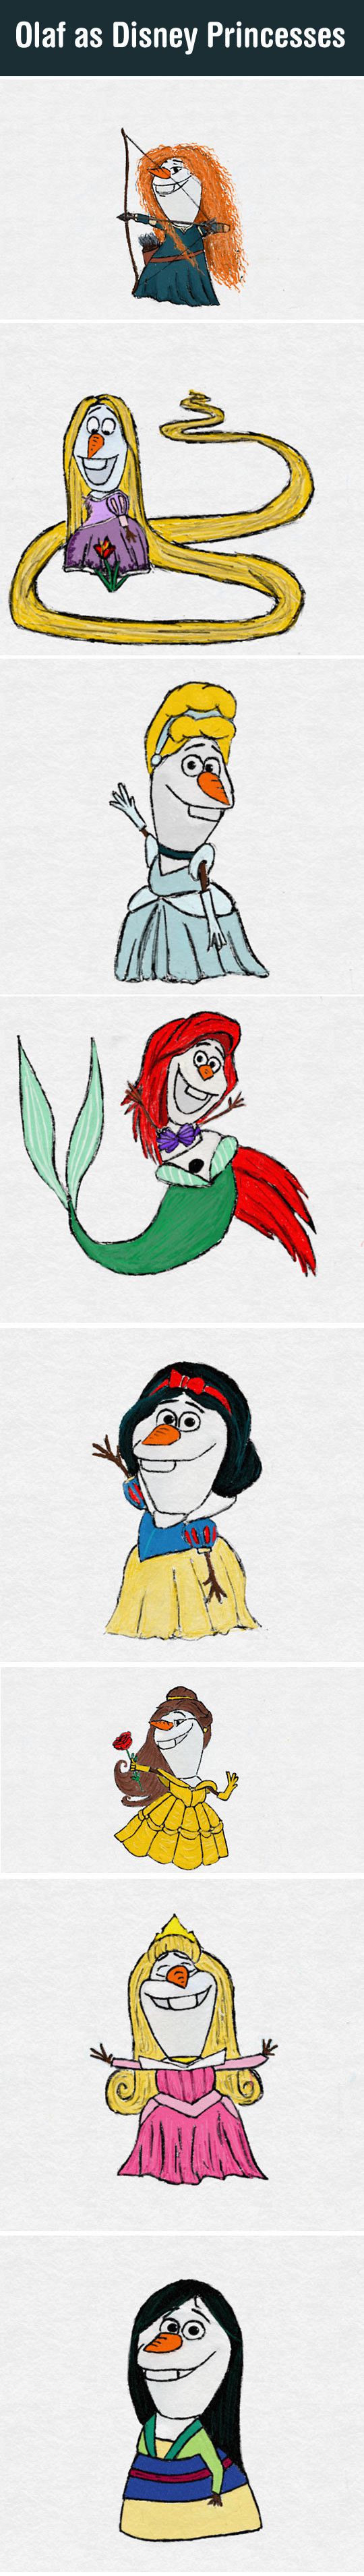 Olaf as Disney Princesses!